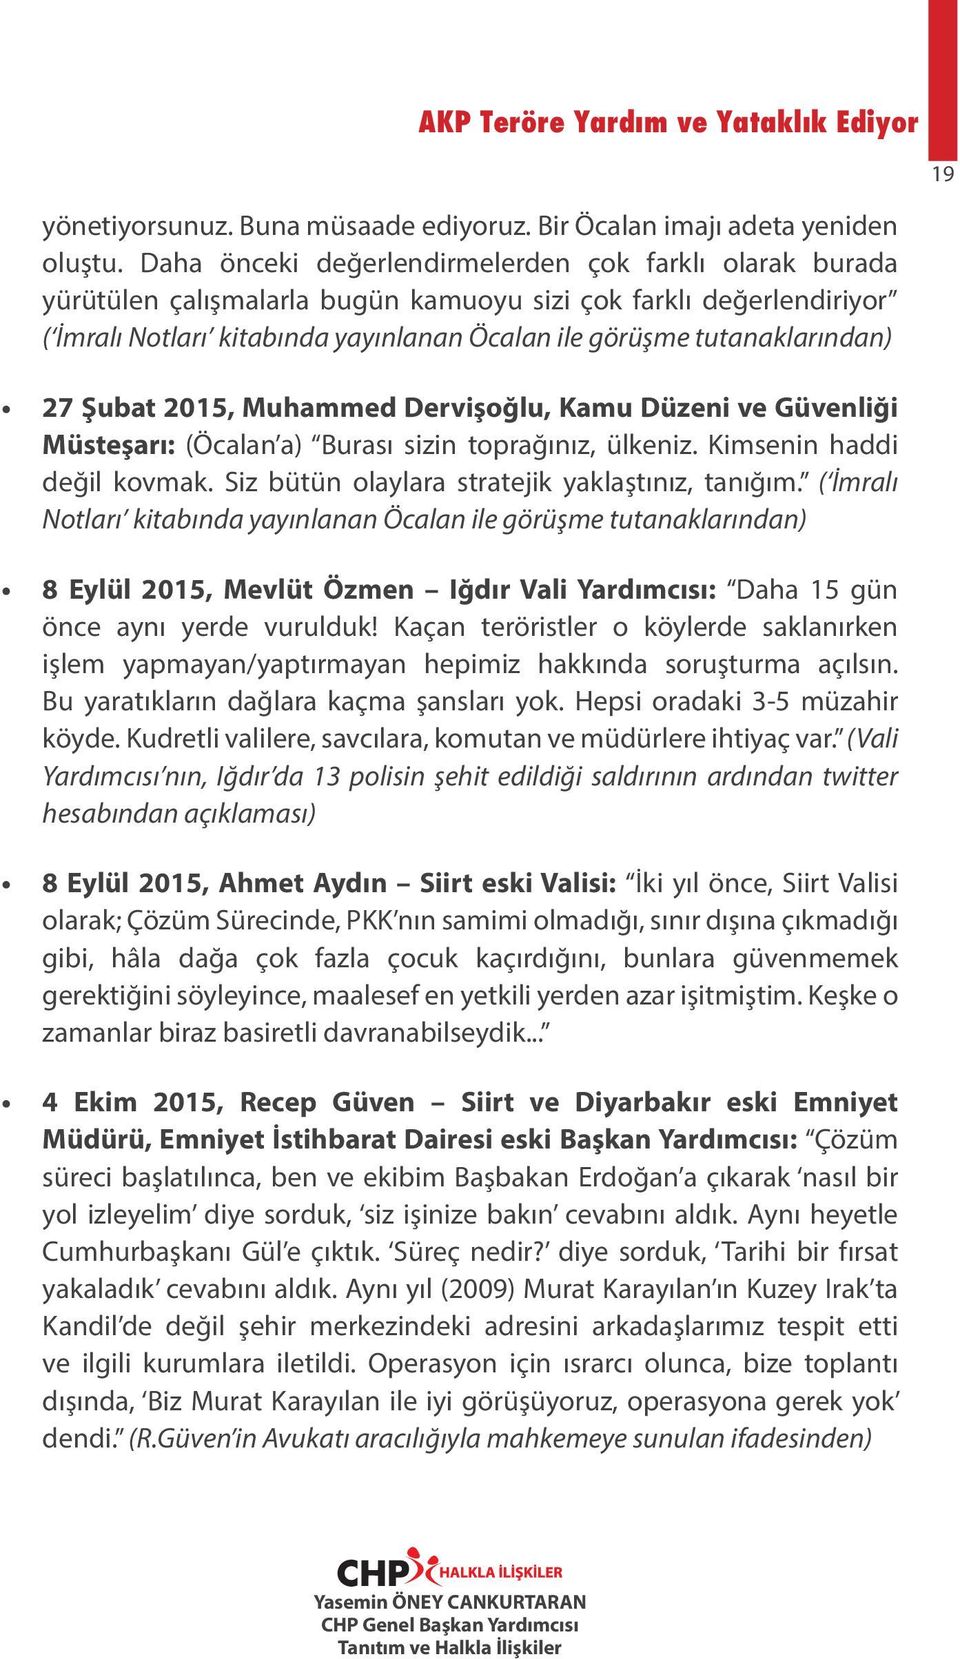 27 Şubat 2015, Muhammed Dervişoğlu, Kamu Düzeni ve Güvenliği Müsteşarı: (Öcalan a) Burası sizin toprağınız, ülkeniz. Kimsenin haddi değil kovmak. Siz bütün olaylara stratejik yaklaştınız, tanığım.